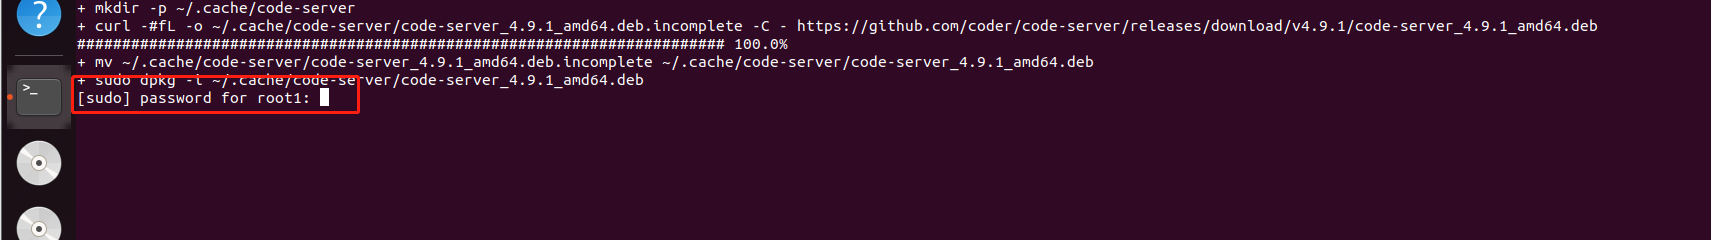 Ubuntu本地安装code-server结合内网穿透实现安卓平板远程写代码,图片4,第5张